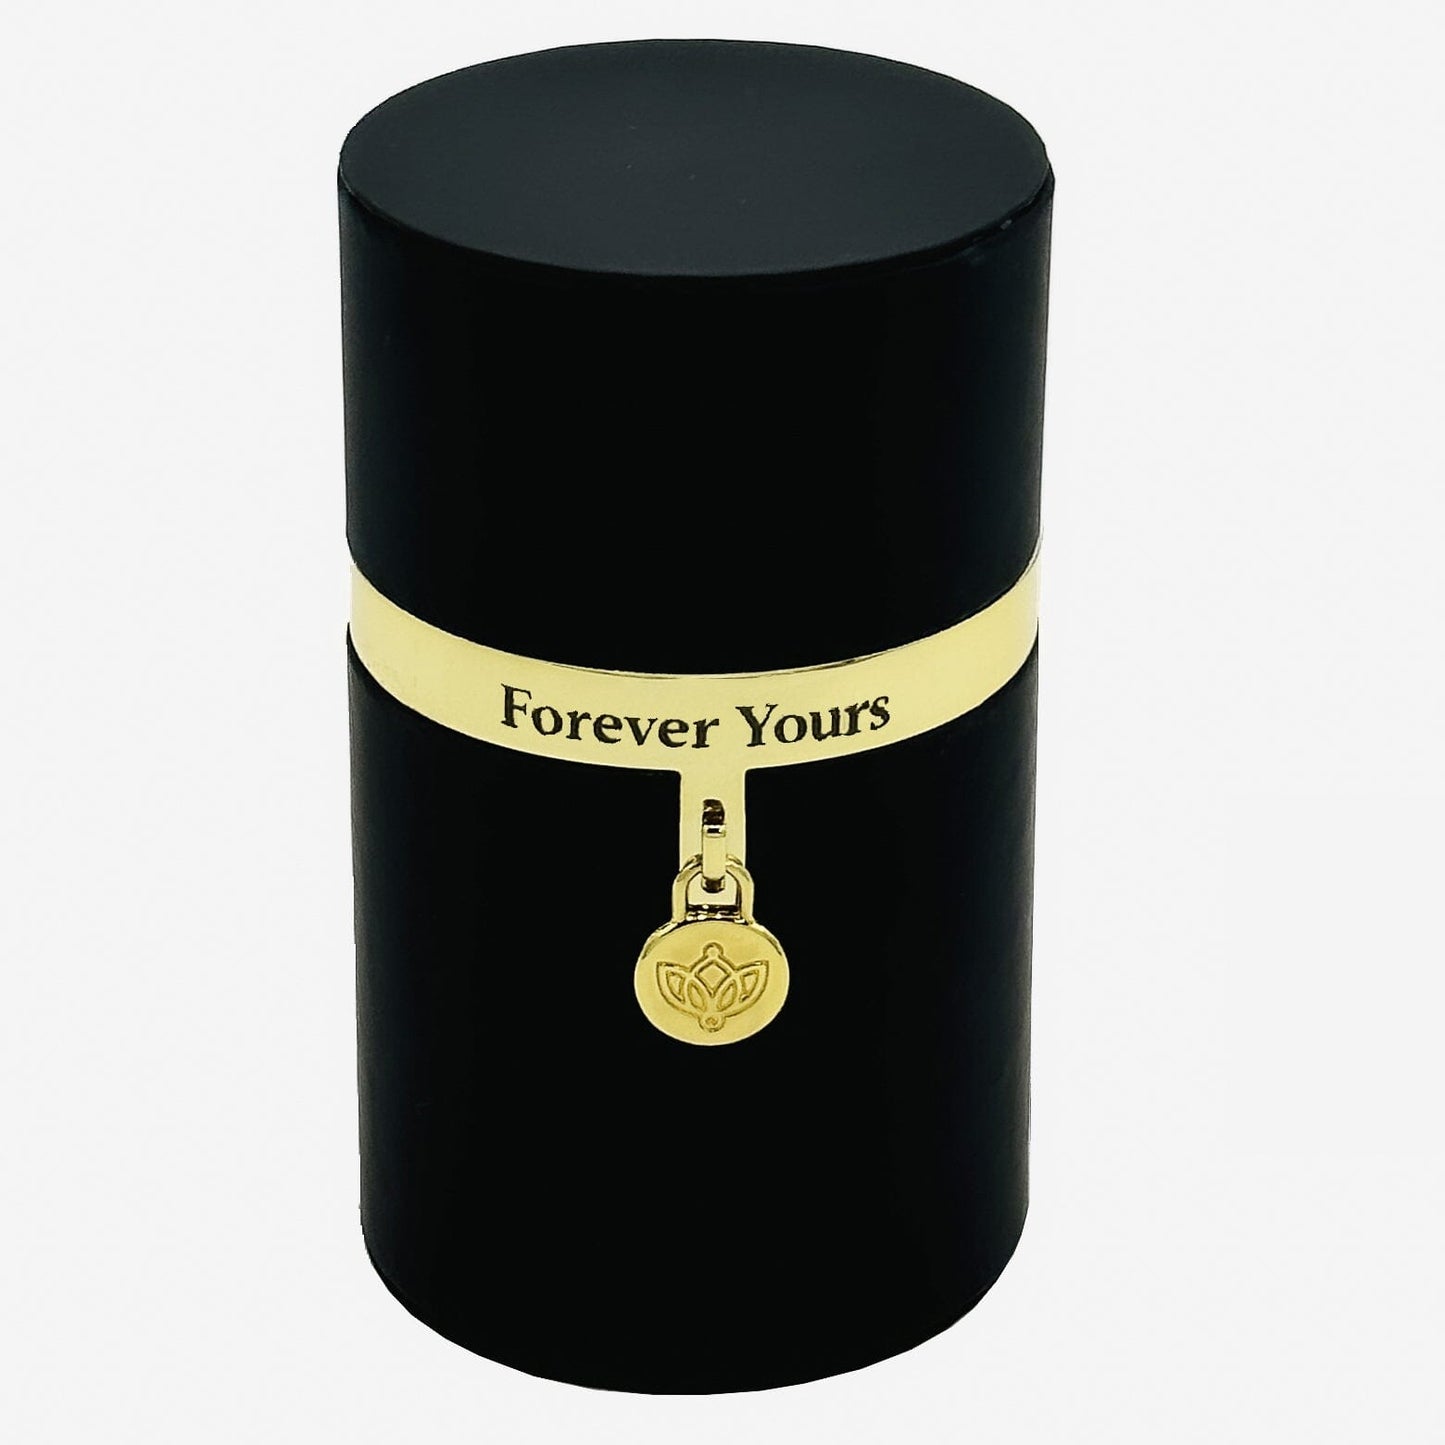 One in a Million™ Round Čierny Box | Forever Yours | Červená ruža